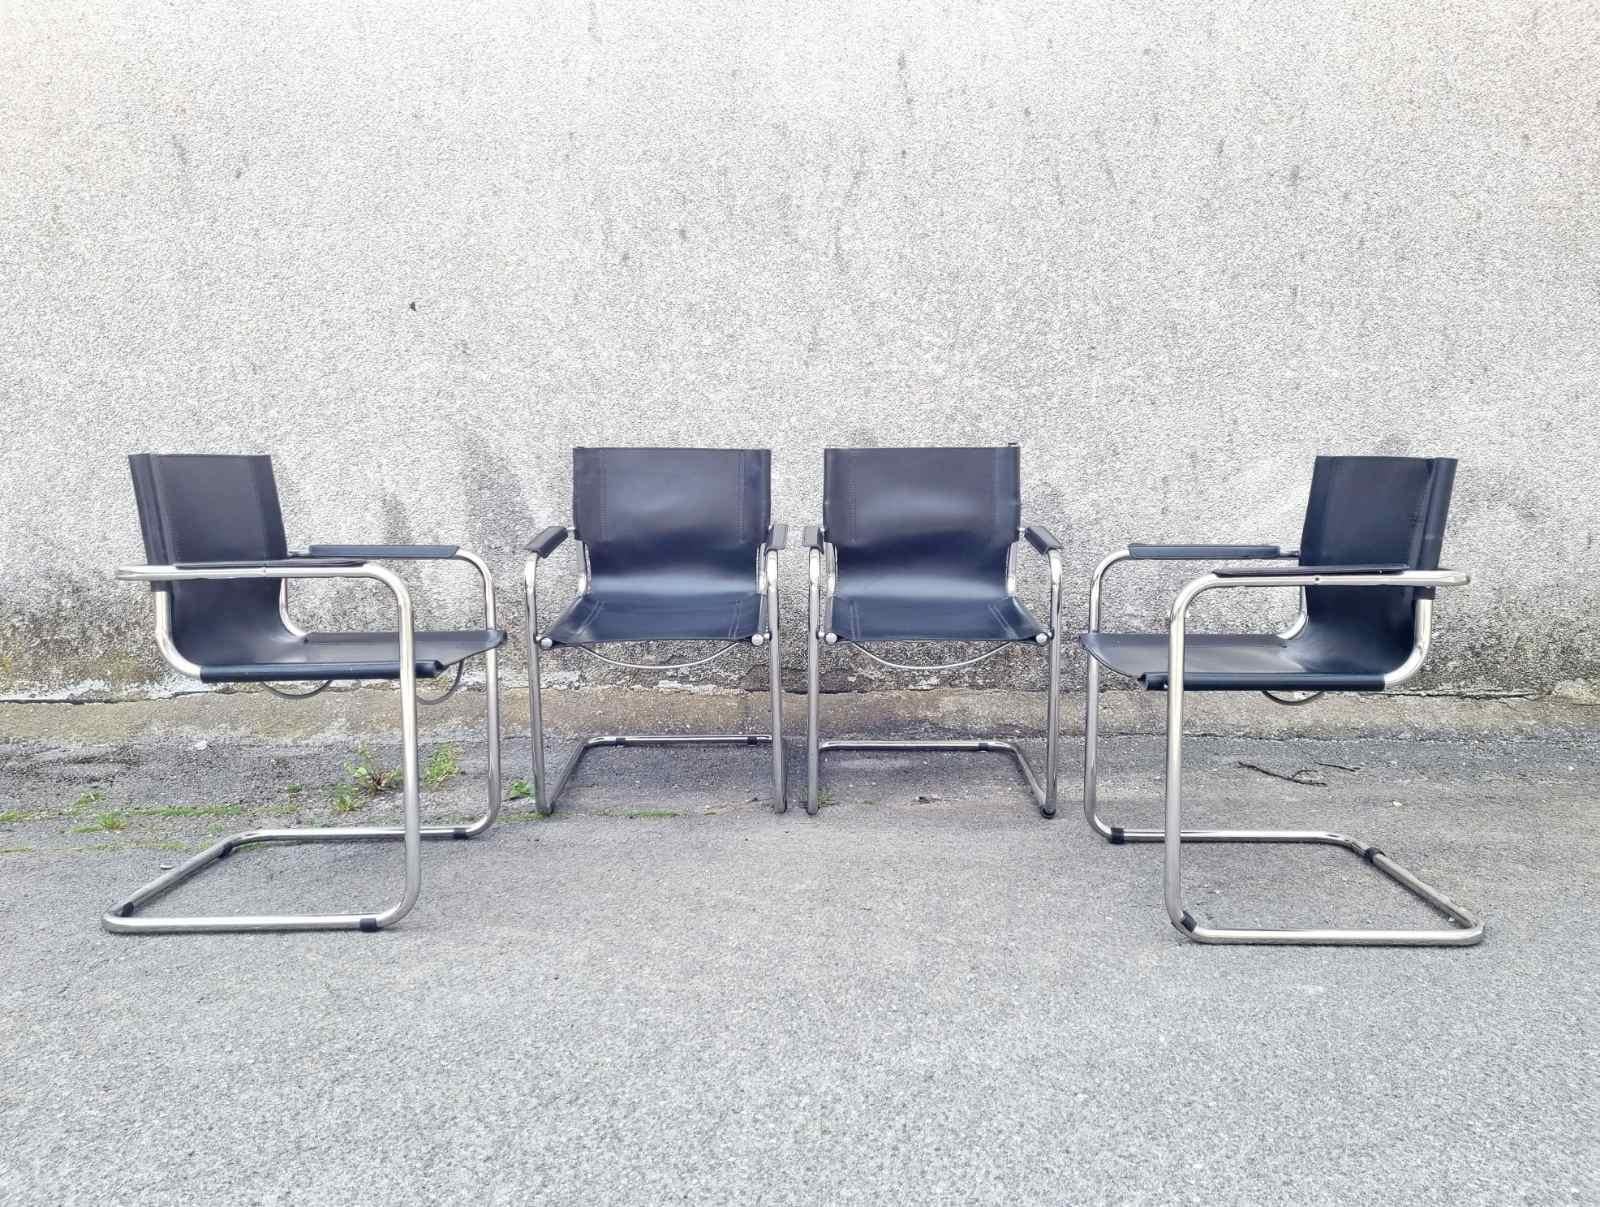 Freitragende MG5 Besucher-Lederstühle Bauhaus, Design Mart Stam, Italien 70er Jahre (Stahl) im Angebot